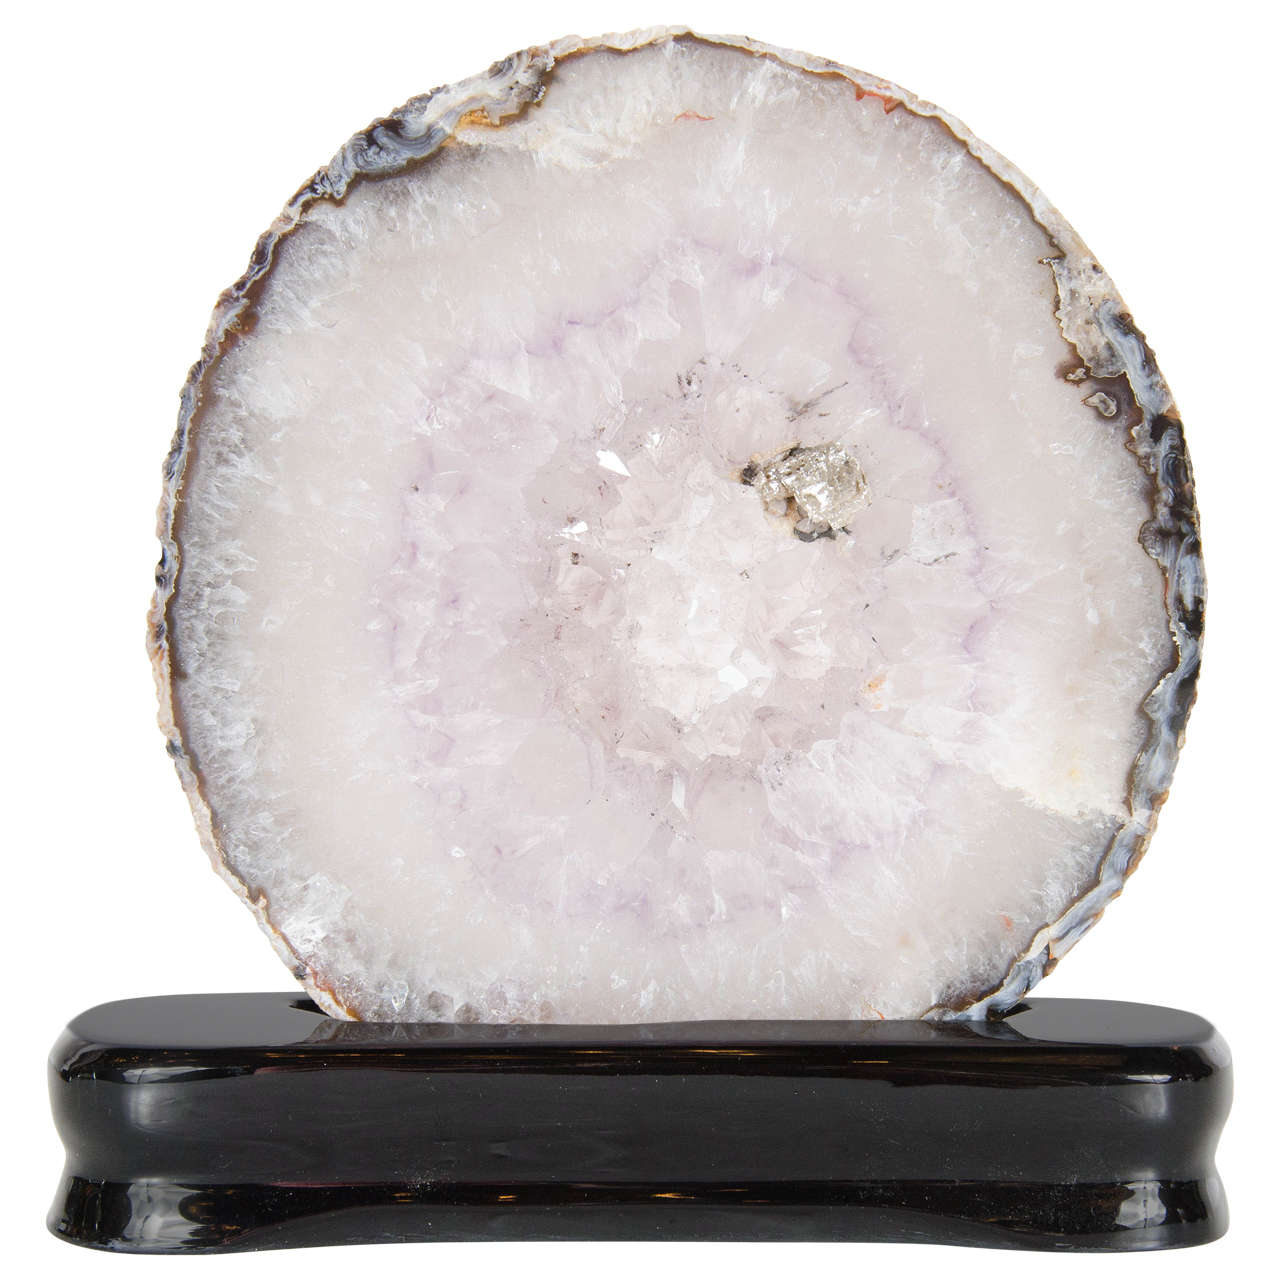 Sliced Organic Geode Crystal Specimen in Lavender and Greys